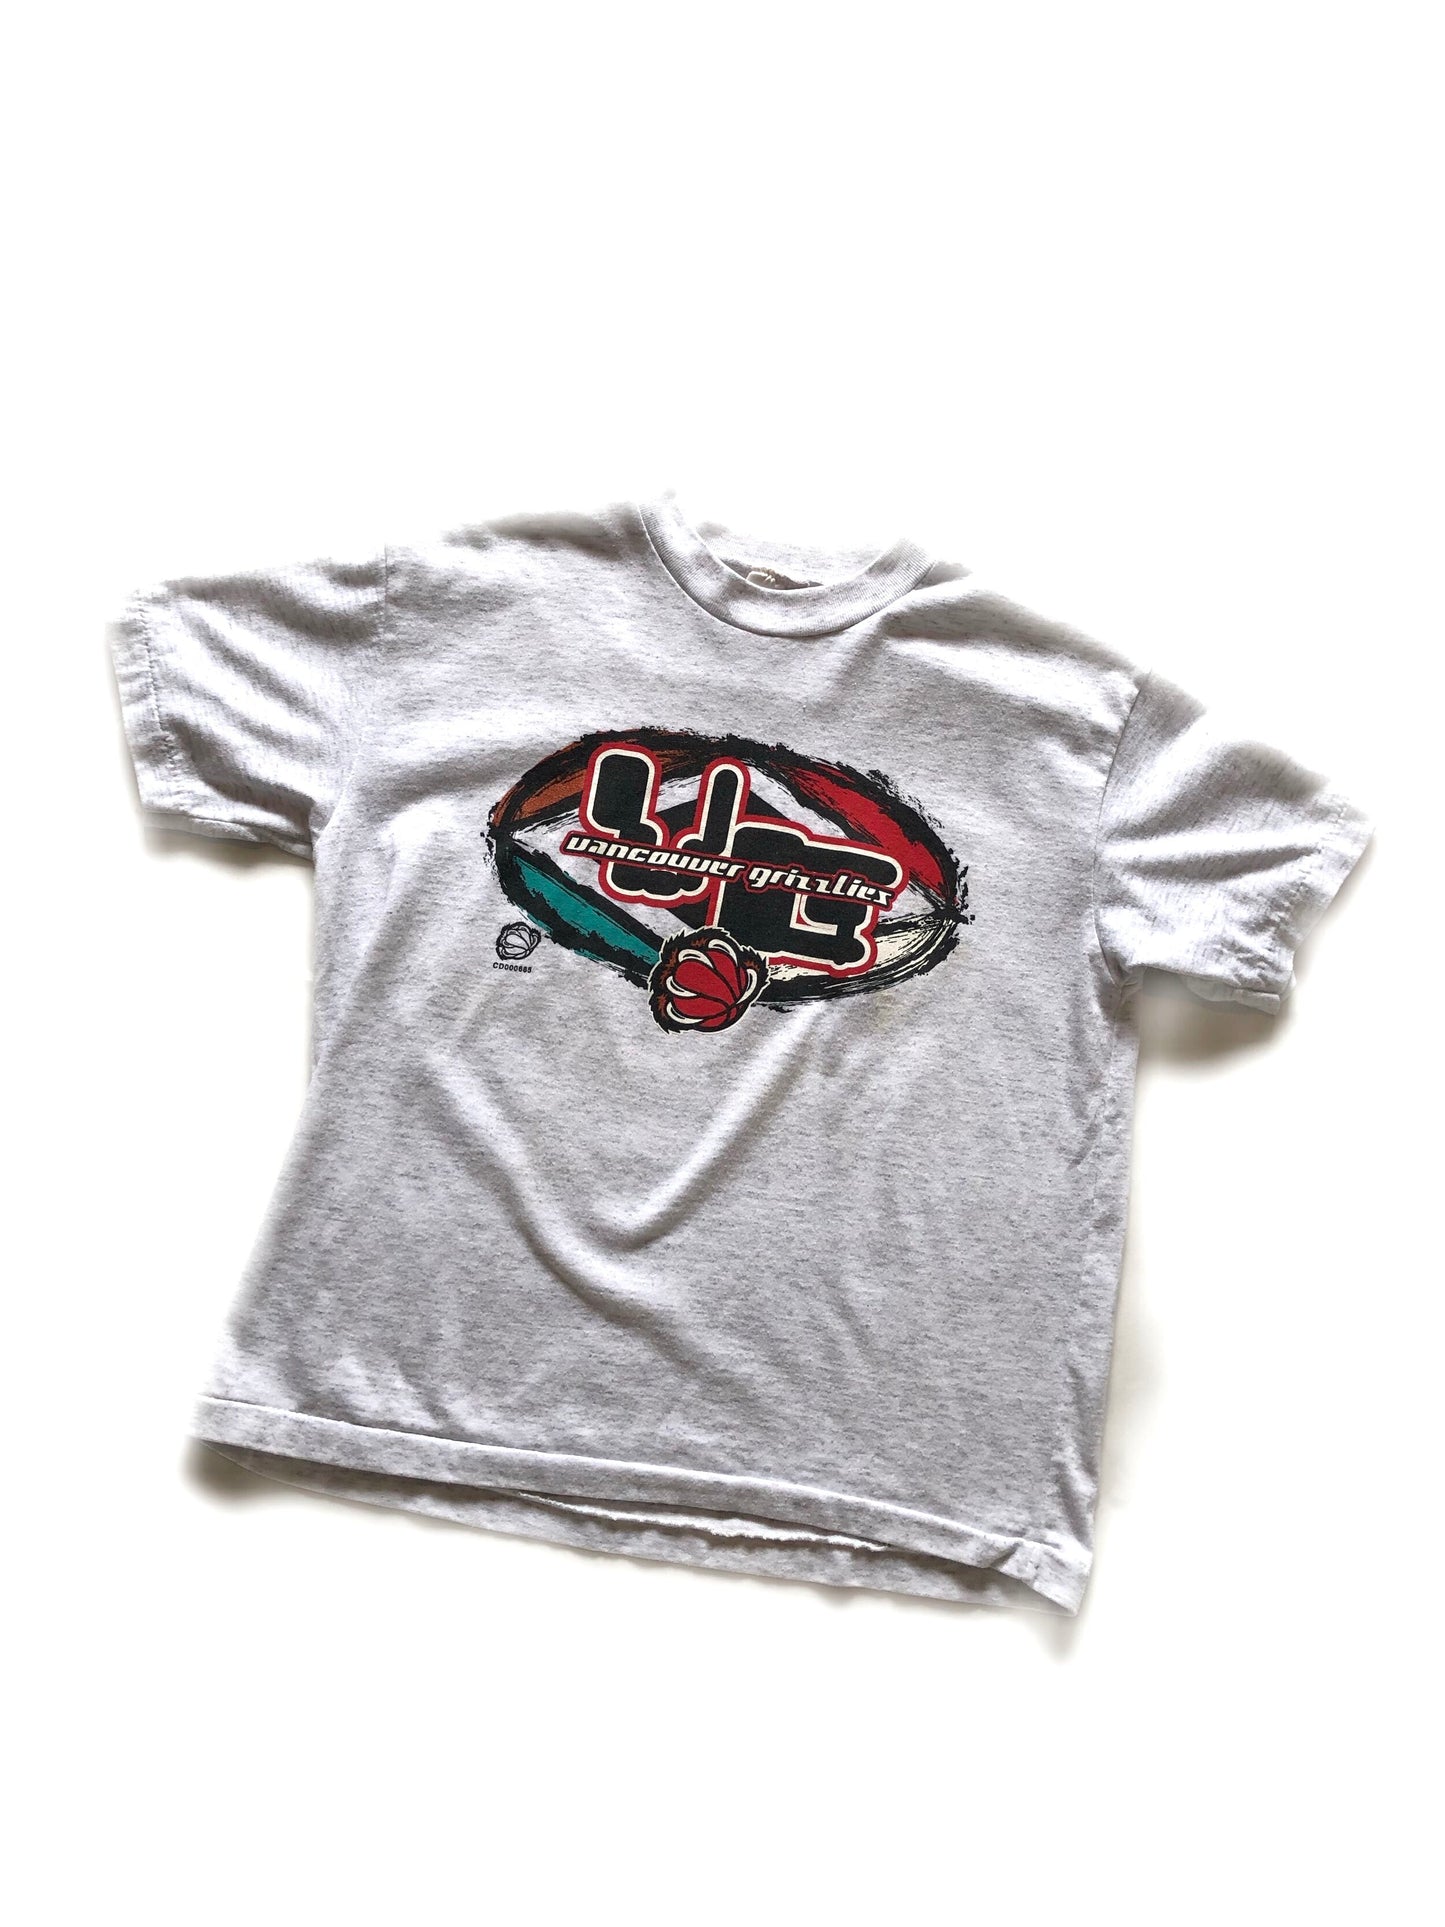 Vintage Vancouver Grizzlies T-Shirt